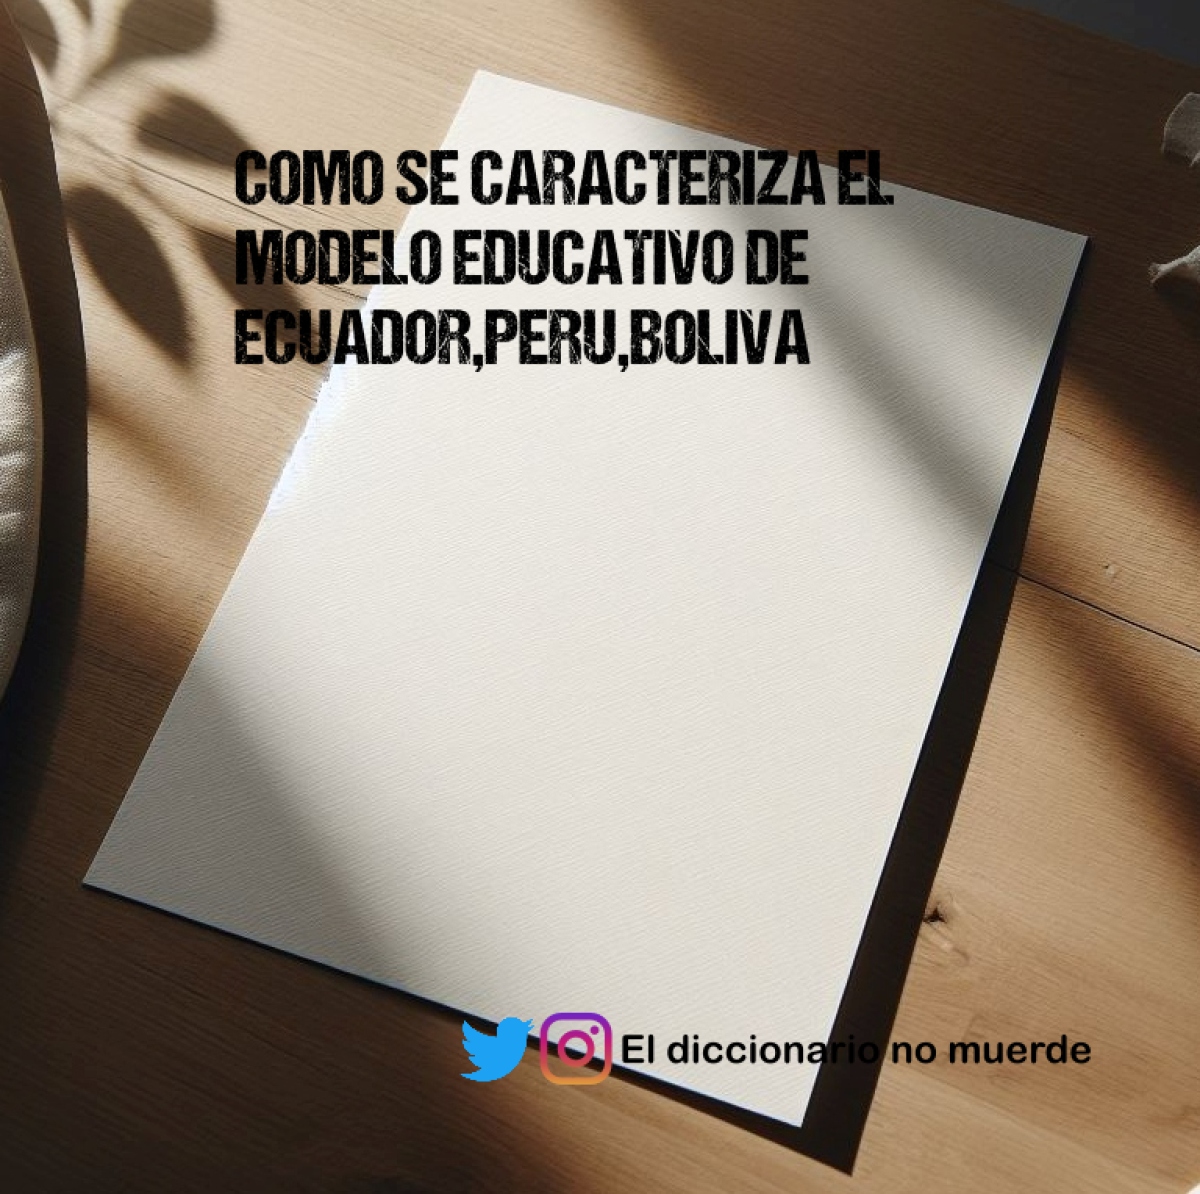 COMO SE CARACTERIZA EL MODELO EDUCATIVO DE ECUADOR,PERU,BOLIVA